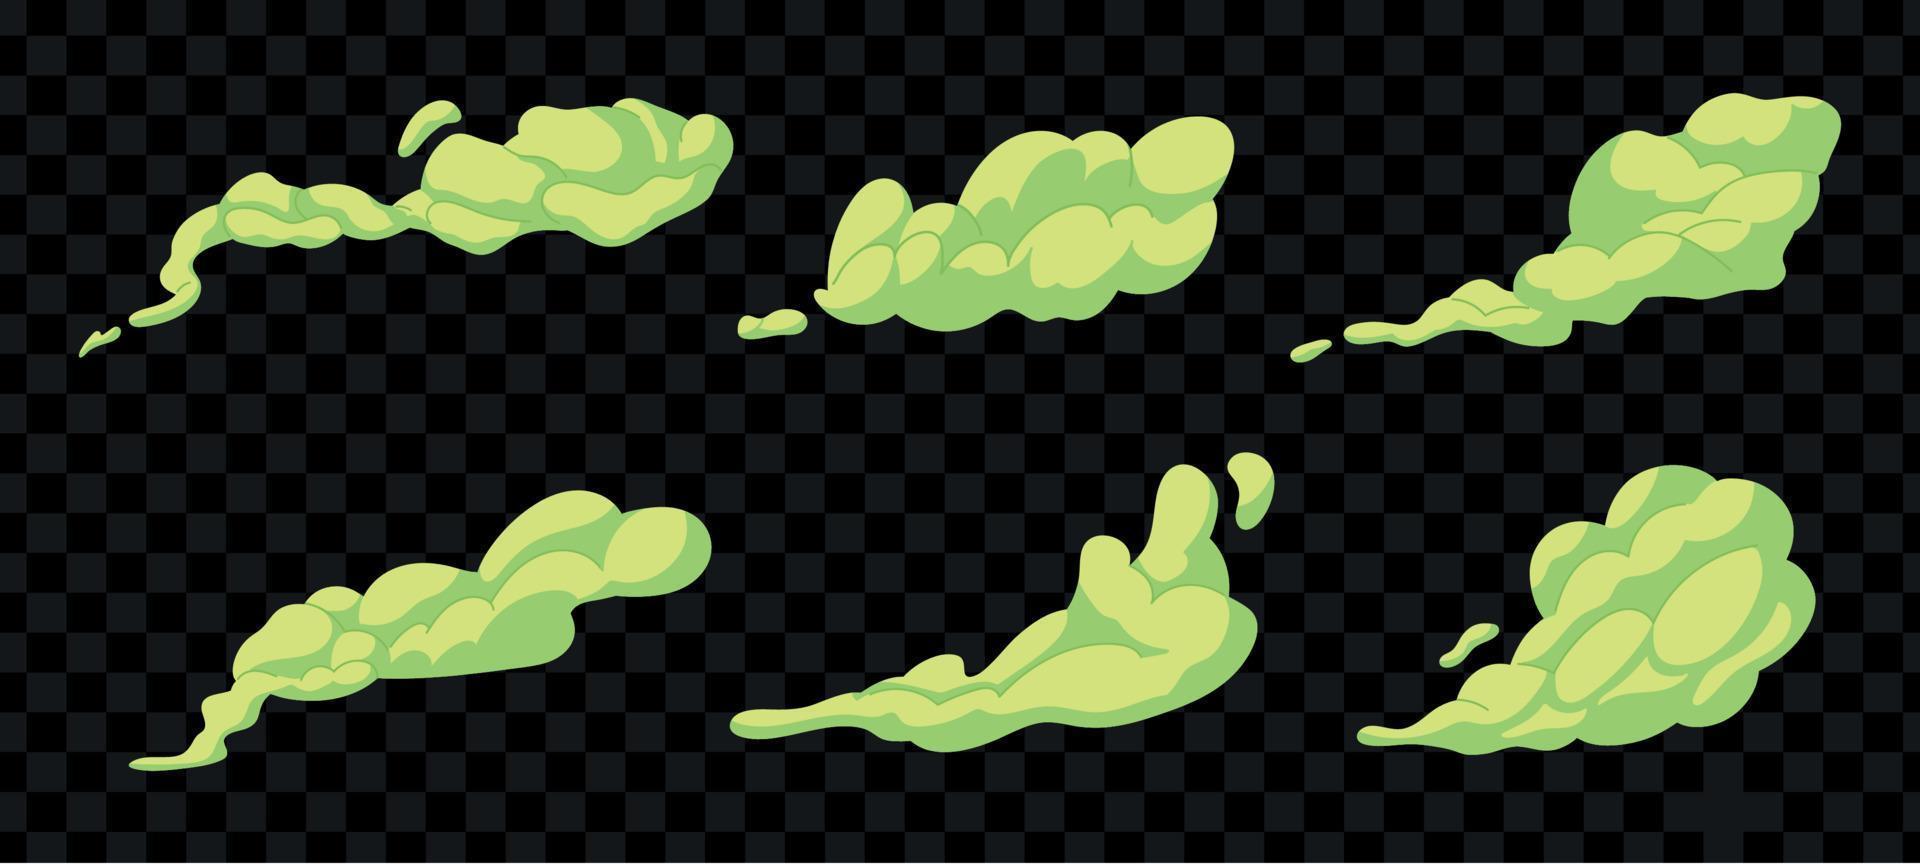 conjunto de amostras de fumaça fedorenta. nuvens tóxicas fedorentas verdes no estilo cartoon. cheiro de mau cheiro. ilustração vetorial isolada vetor